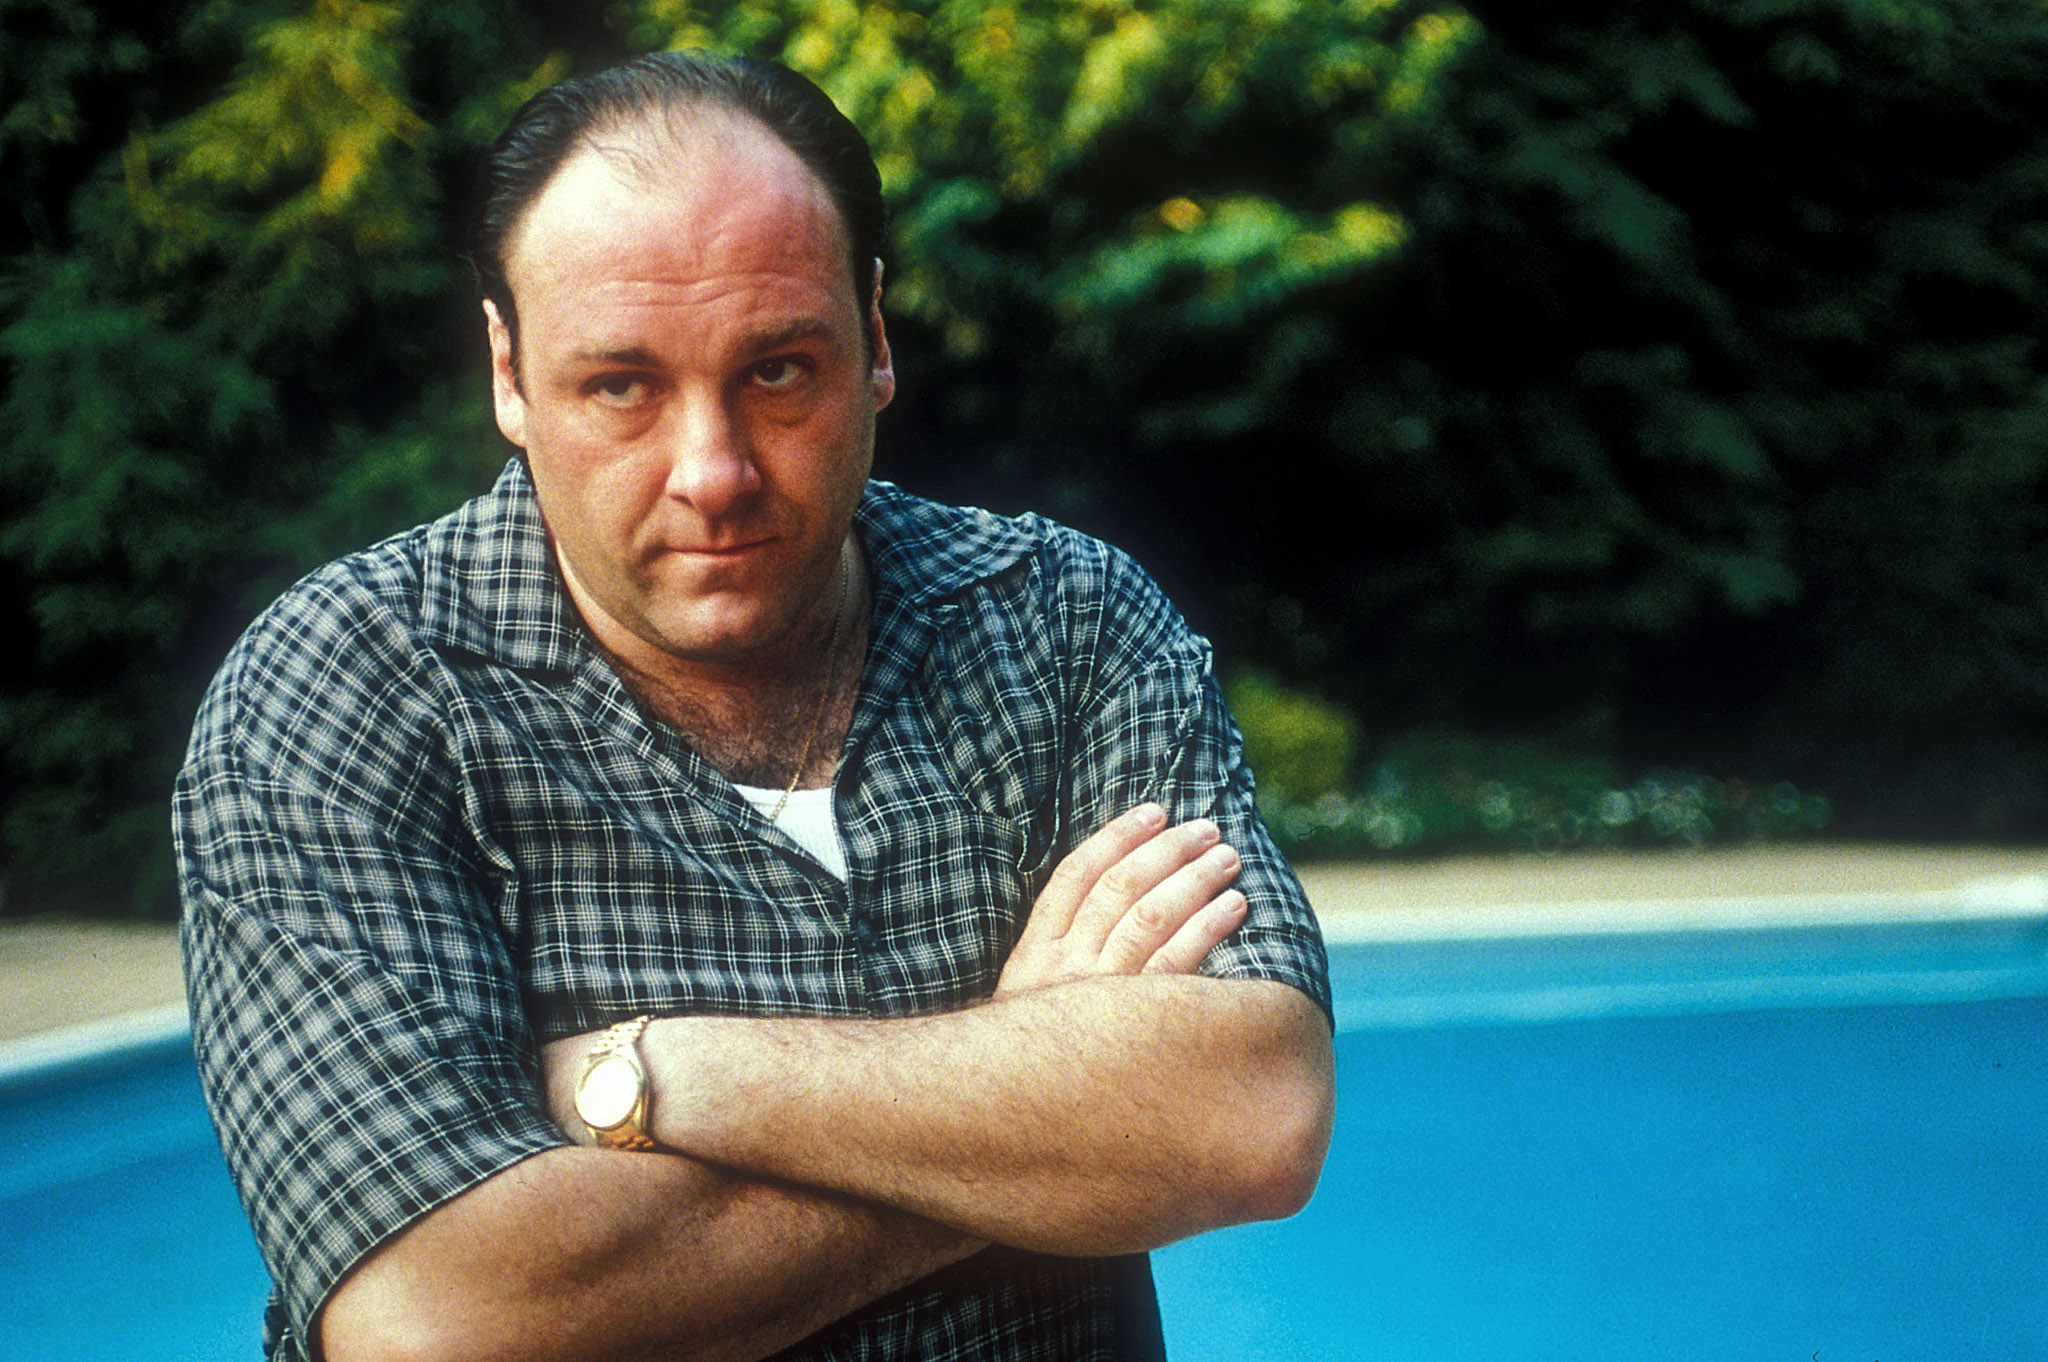 Tony Soprano as portrayed by the late great James Gandolfini